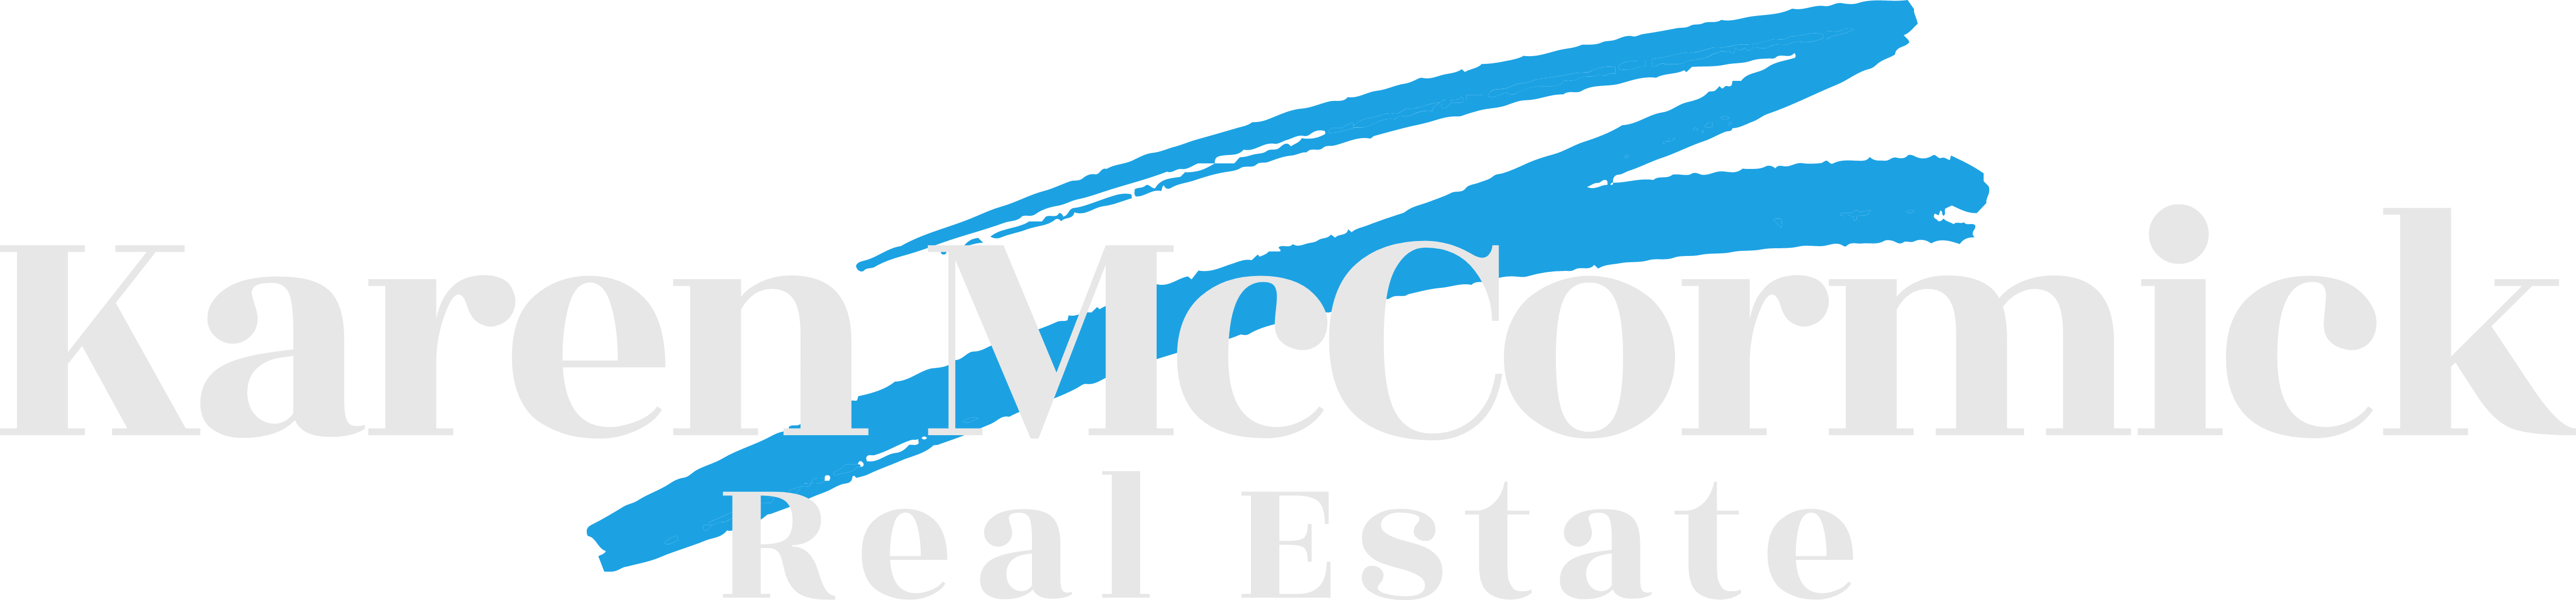 Karen McCormick Real Estate